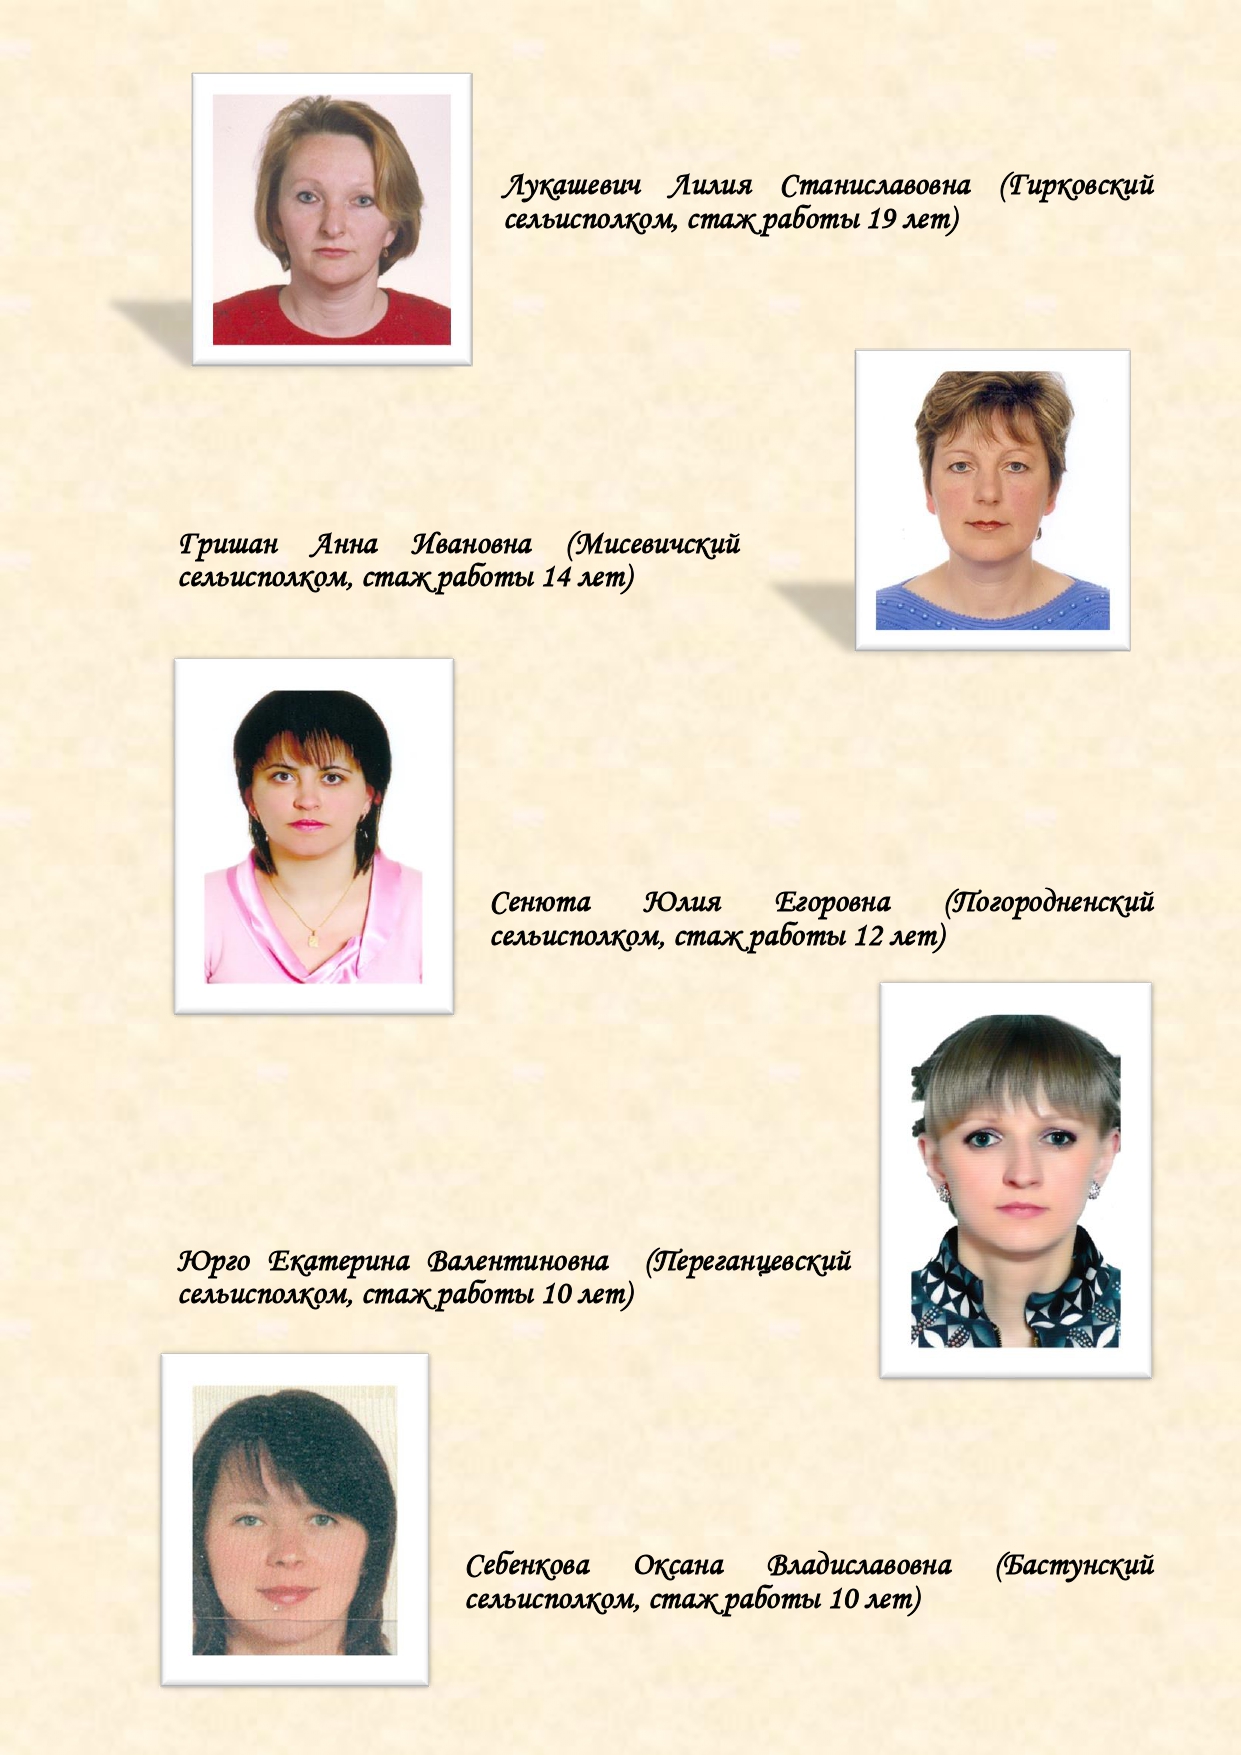 История органов загса Вороновского района с изменениями (1)_page-0013.jpg